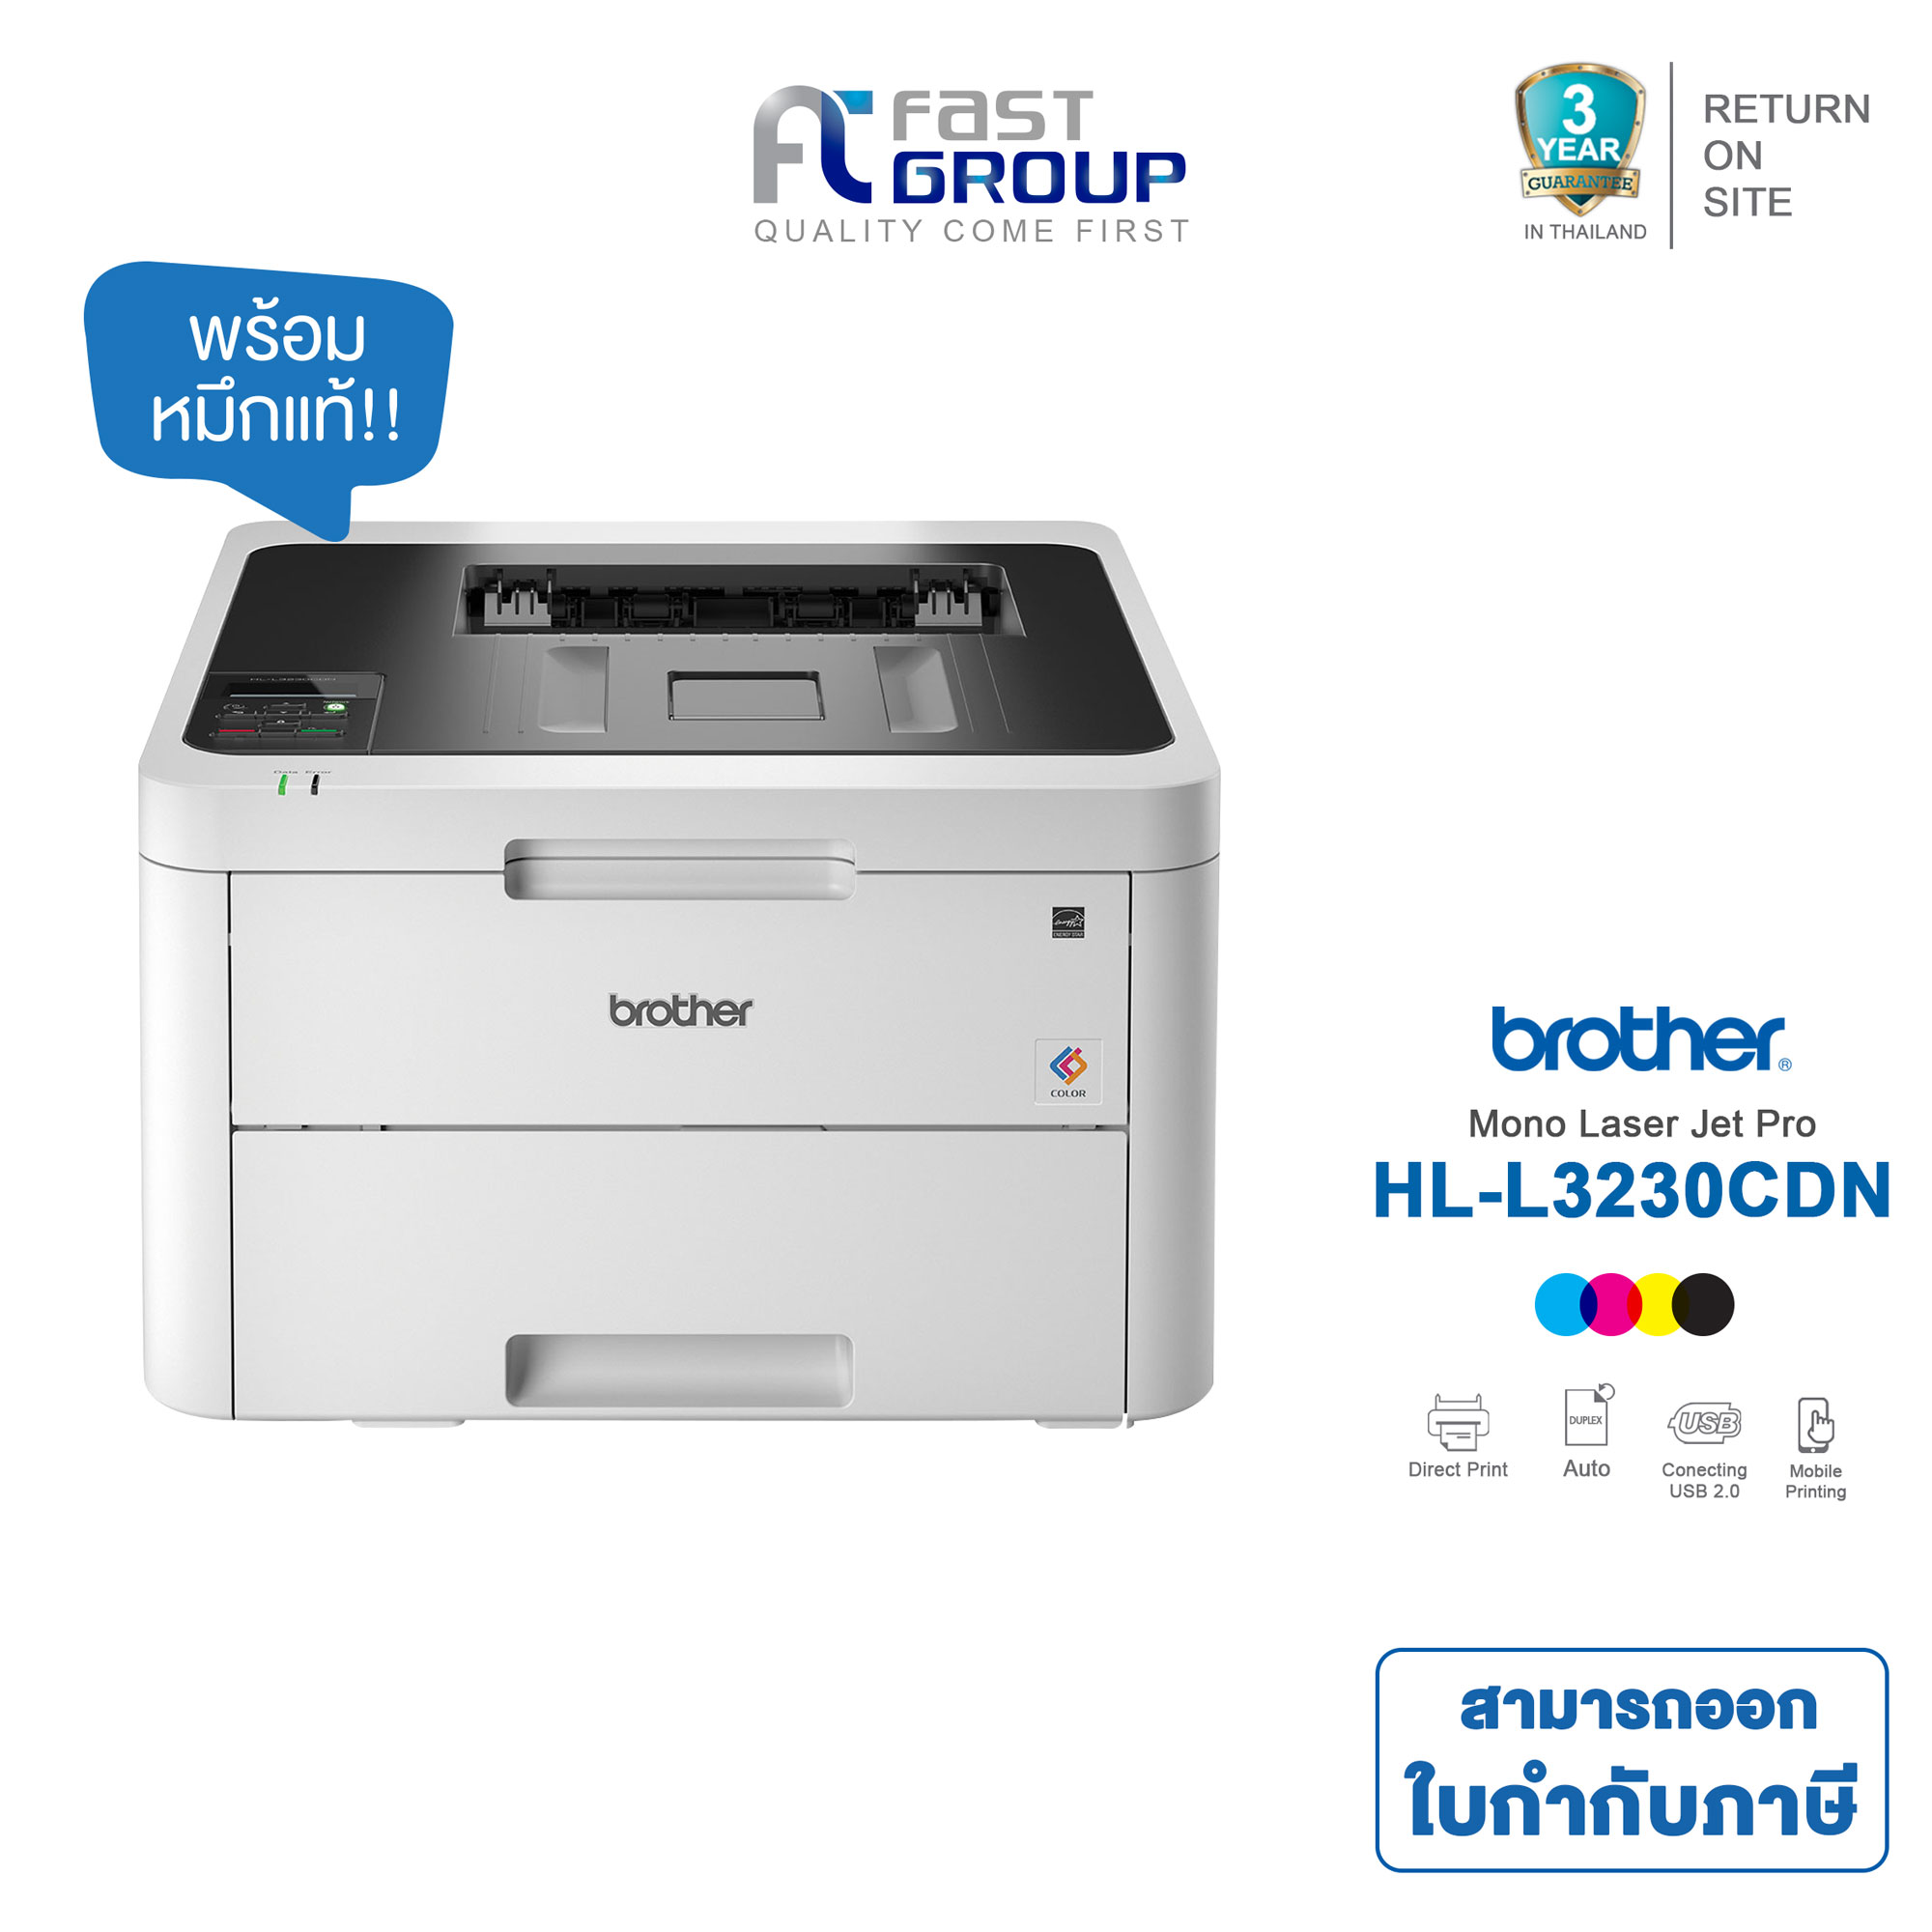 Brother HL-L3230CDN Color Laser Printer